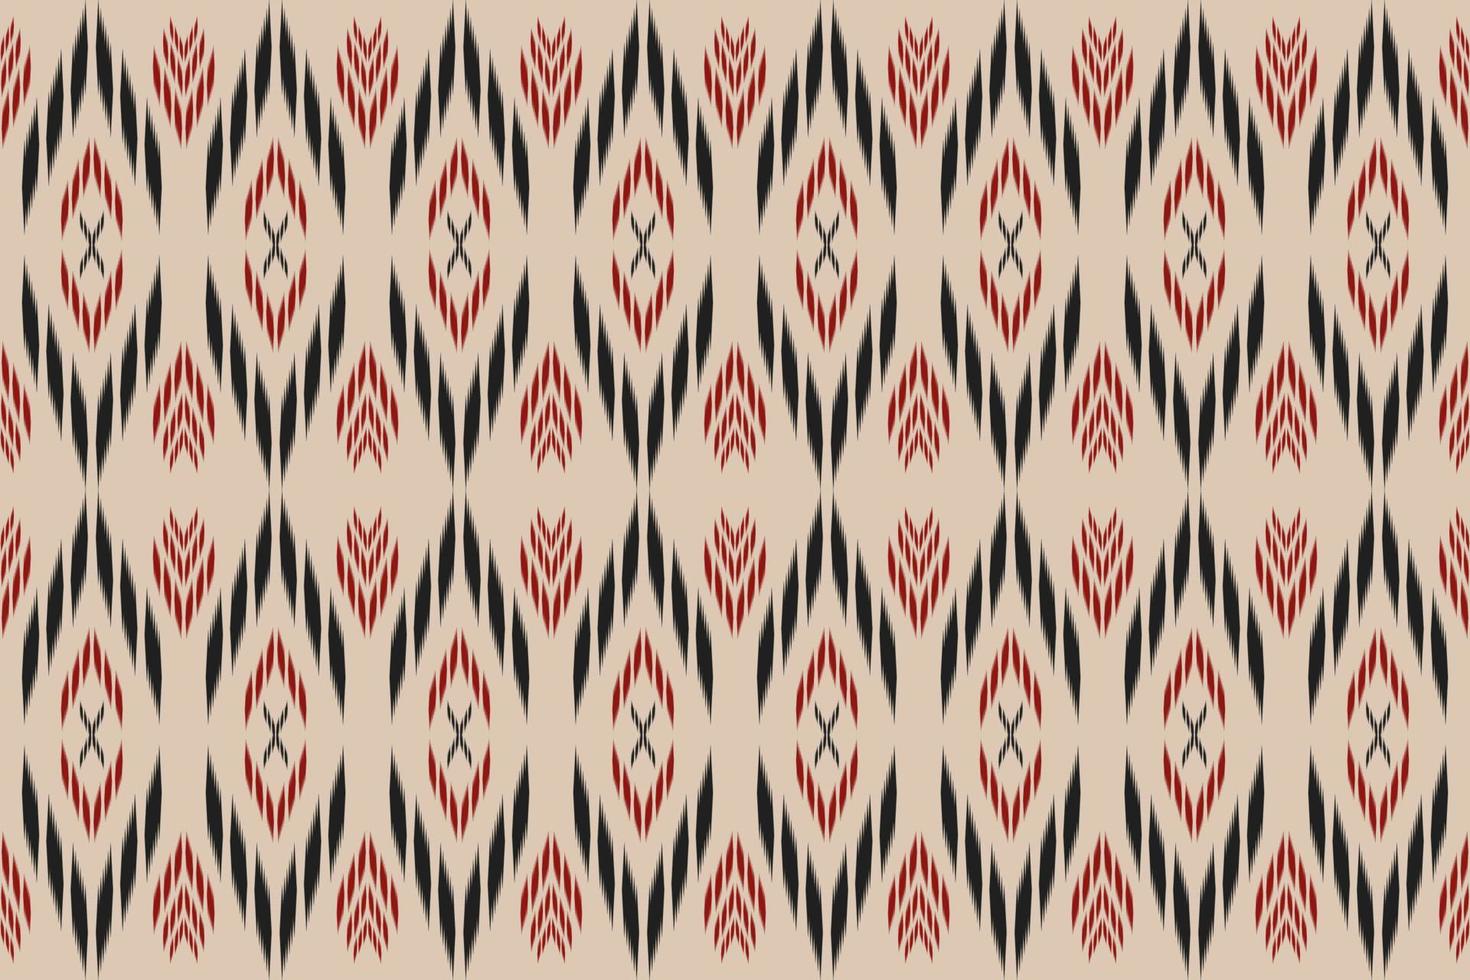 étnico oriental ikat sem costura padrão tradicional. tecido estilo indiano. design para plano de fundo, papel de parede, ilustração vetorial, tecido, vestuário, tapete, têxtil, batik, bordado. vetor